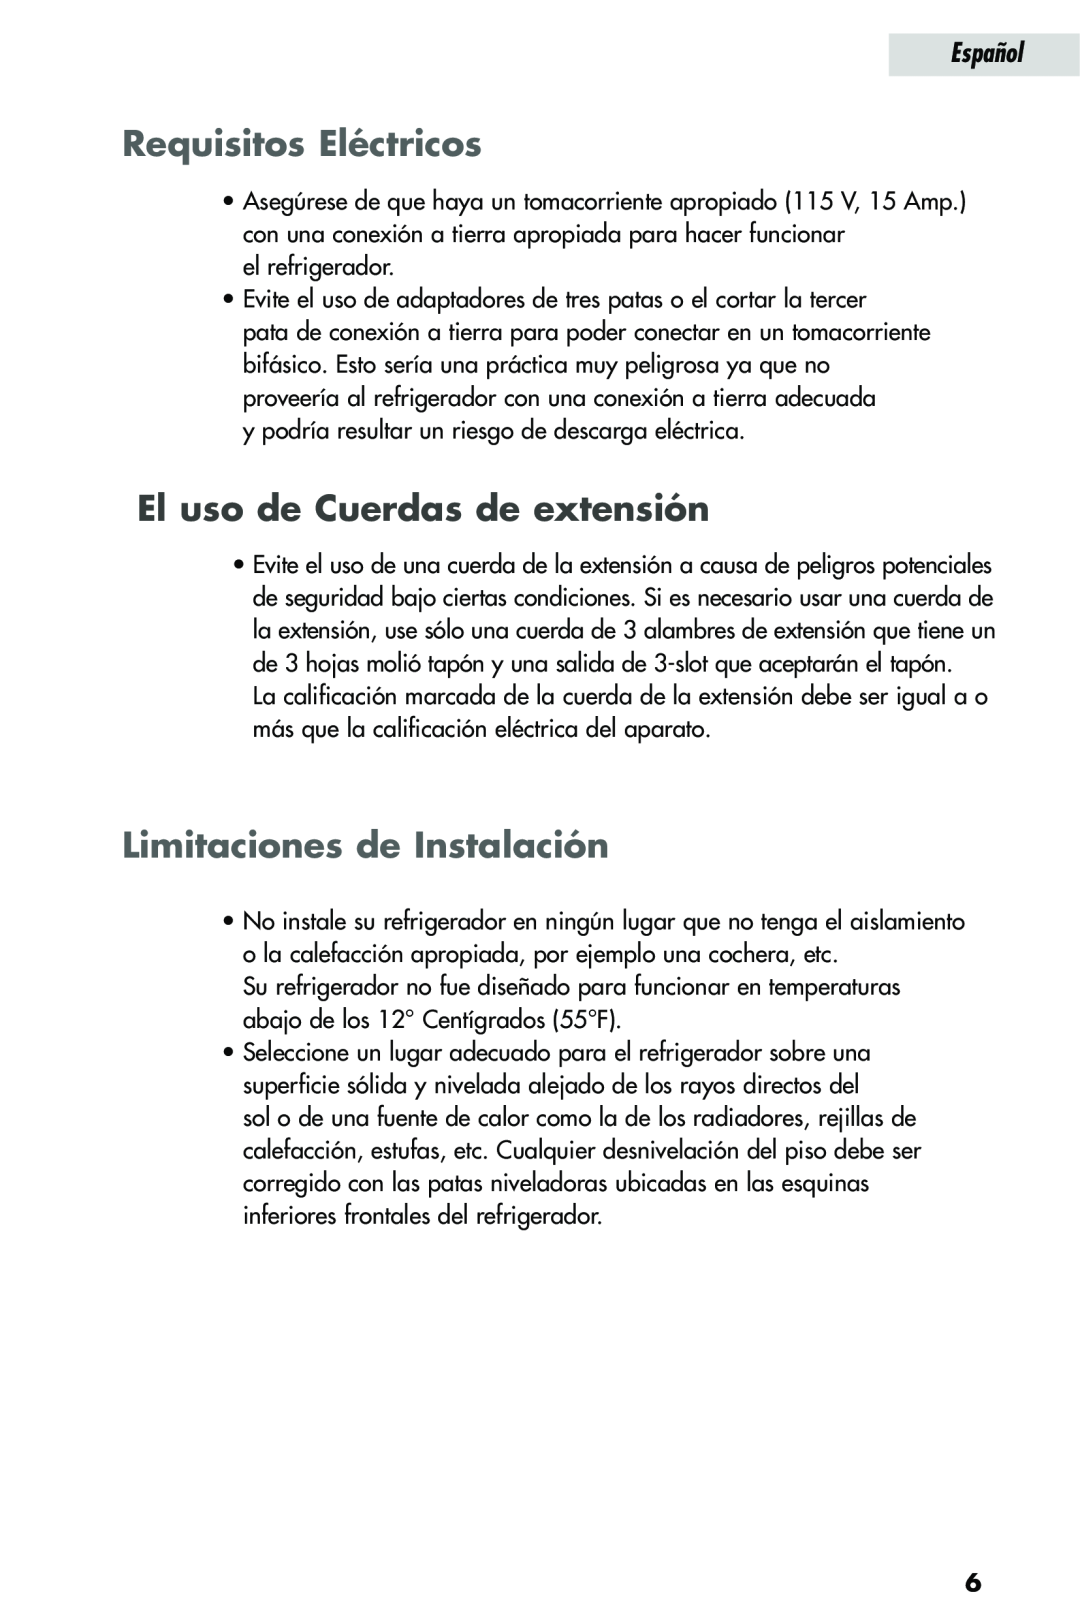 Haier HRQ02WNA, HRQ03WNA Requisitos Eléctricos, El uso de Cuerdas de extensión, Limitaciones de Instalación, Español 